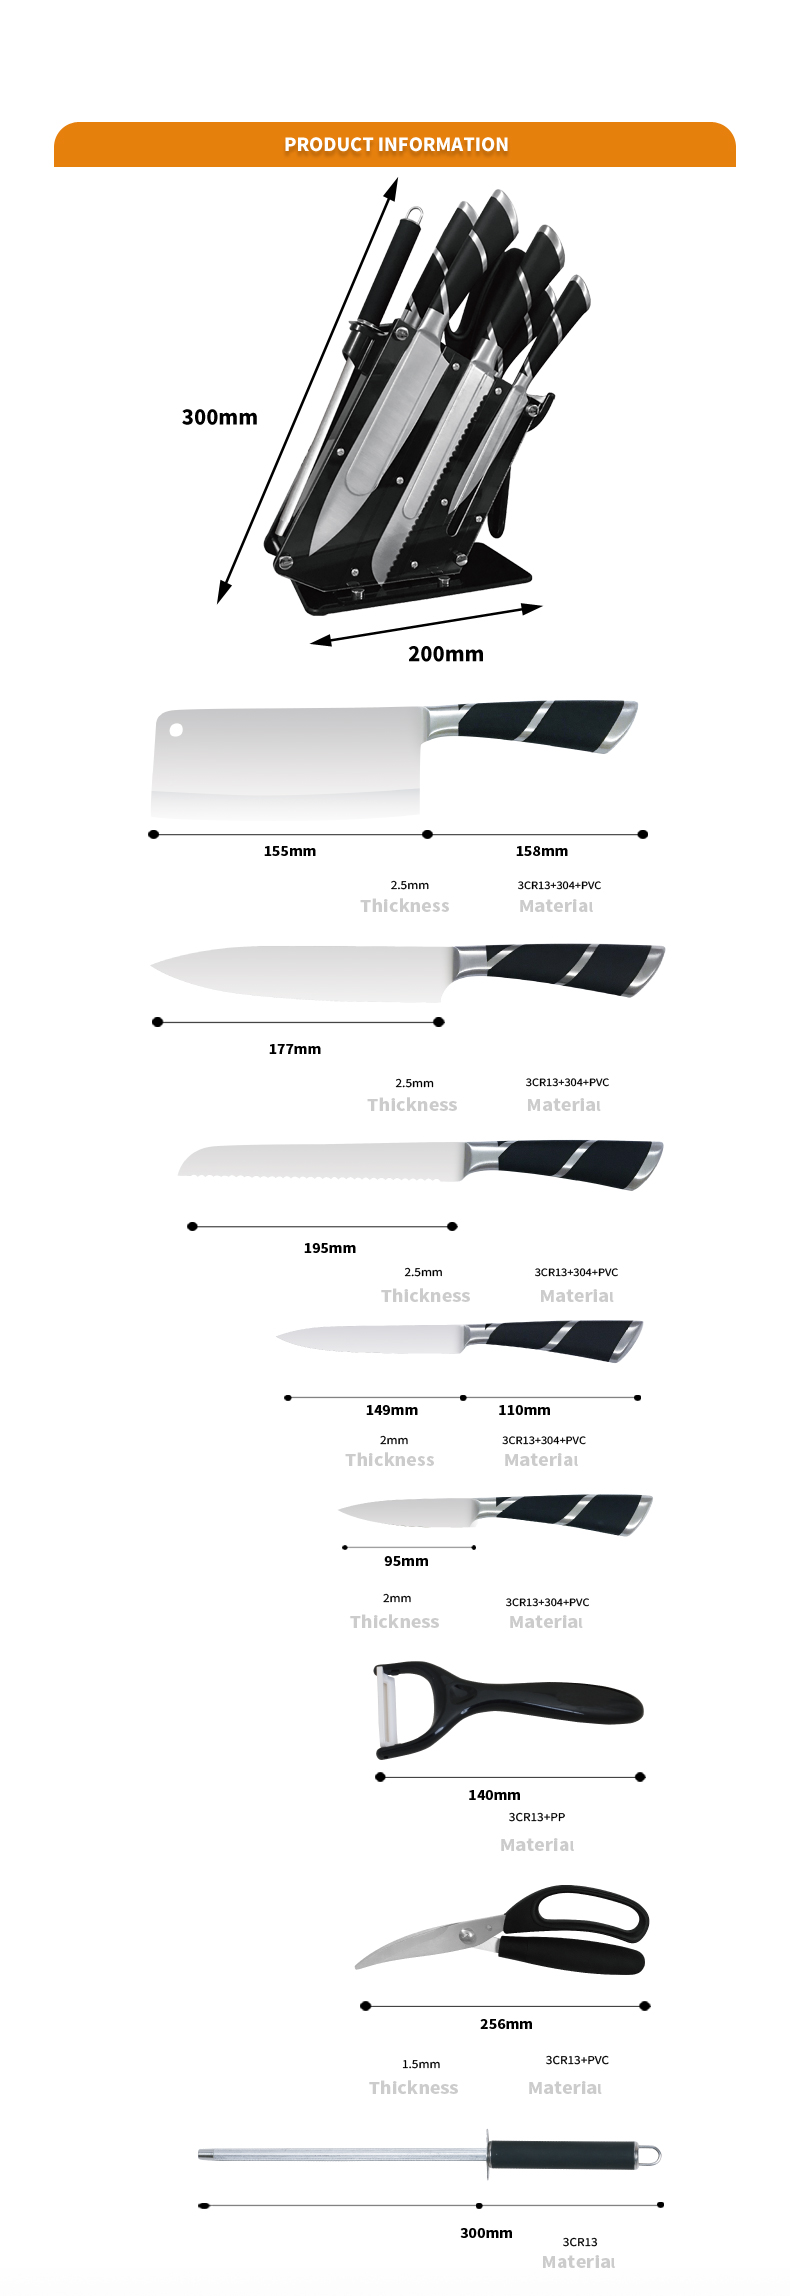 K142-Нов стил OEM 8бр мултифункционален комплект кухненски съдове от неръждаема стомана-ZX | кухненски нож, кухненски инструменти, силиконова форма за торта, дъска за рязане, комплекти инструменти за печене, нож за готвач, нож за пържола, нож за пържола, нож за помощни средства, нож за чистене, блок за ножове, поставка за ножове, нож Santoku, нож за малко дете, нож за пържола, нож за нарязване, Нож, цветен нож, нож от неръждаема стомана, отварачка за консерви, отварачка за бутилки, цедка за чай, ренде, бъркалка за яйца, найлонов кухненски инструмент, силиконов кухненски инструмент, резачка за бисквитки, комплект ножове за готвене, точилка за ножове, белачка, нож за торта, нож за кафе, Нож, силиконова шпакла, силиконова лъжица, щипка за храна, кован нож, кухненски ножици, ножове за печене на торти, детски ножове за готвене, нож за дърворезба